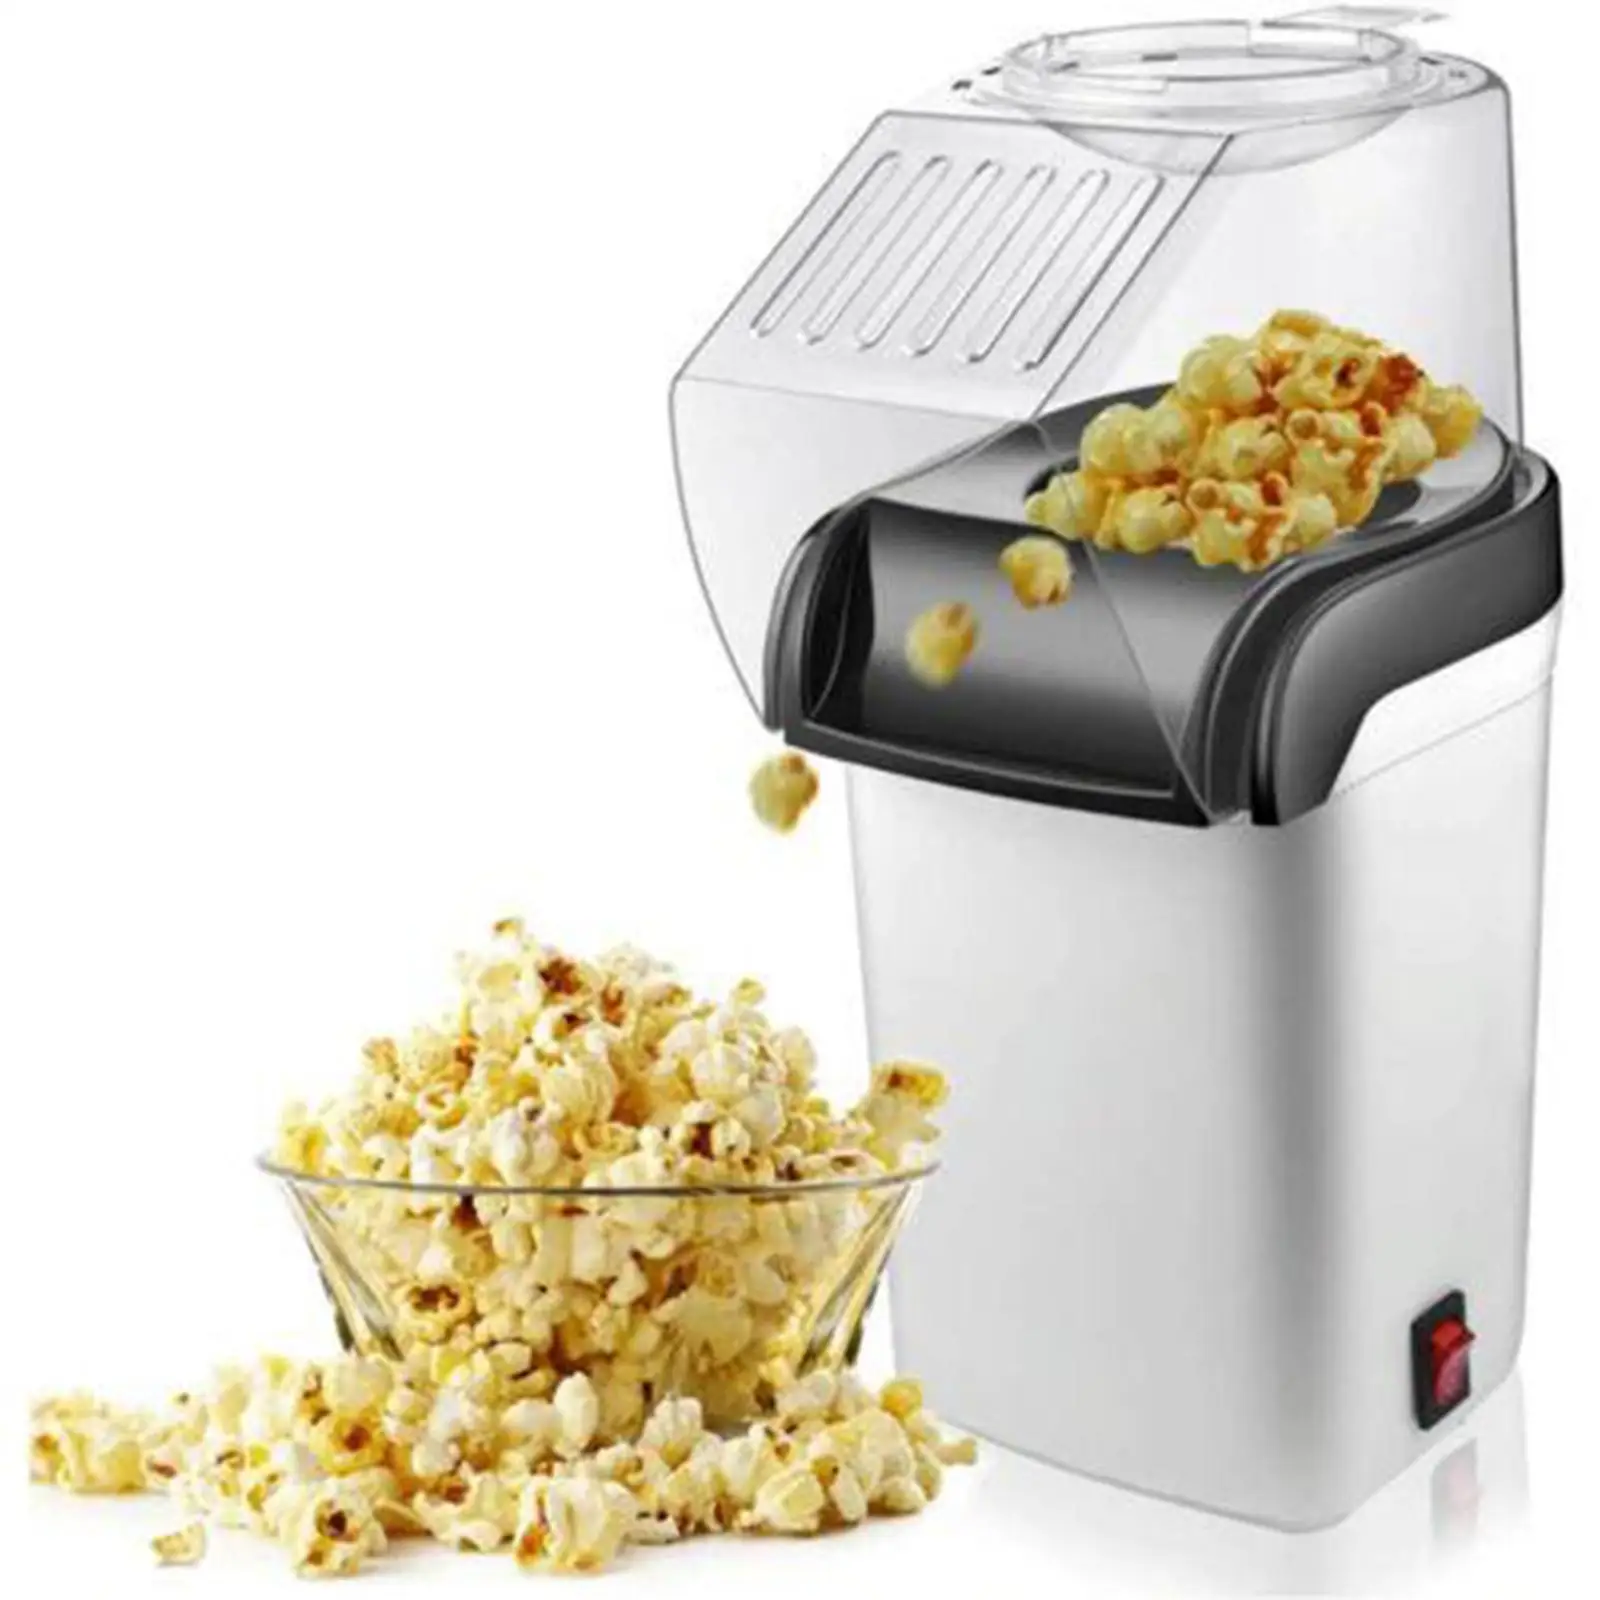 DIY Die Popcorn Maker Machine Store Air Popcorn Making Kitchen Desktop DIY Corn Maker 1200W